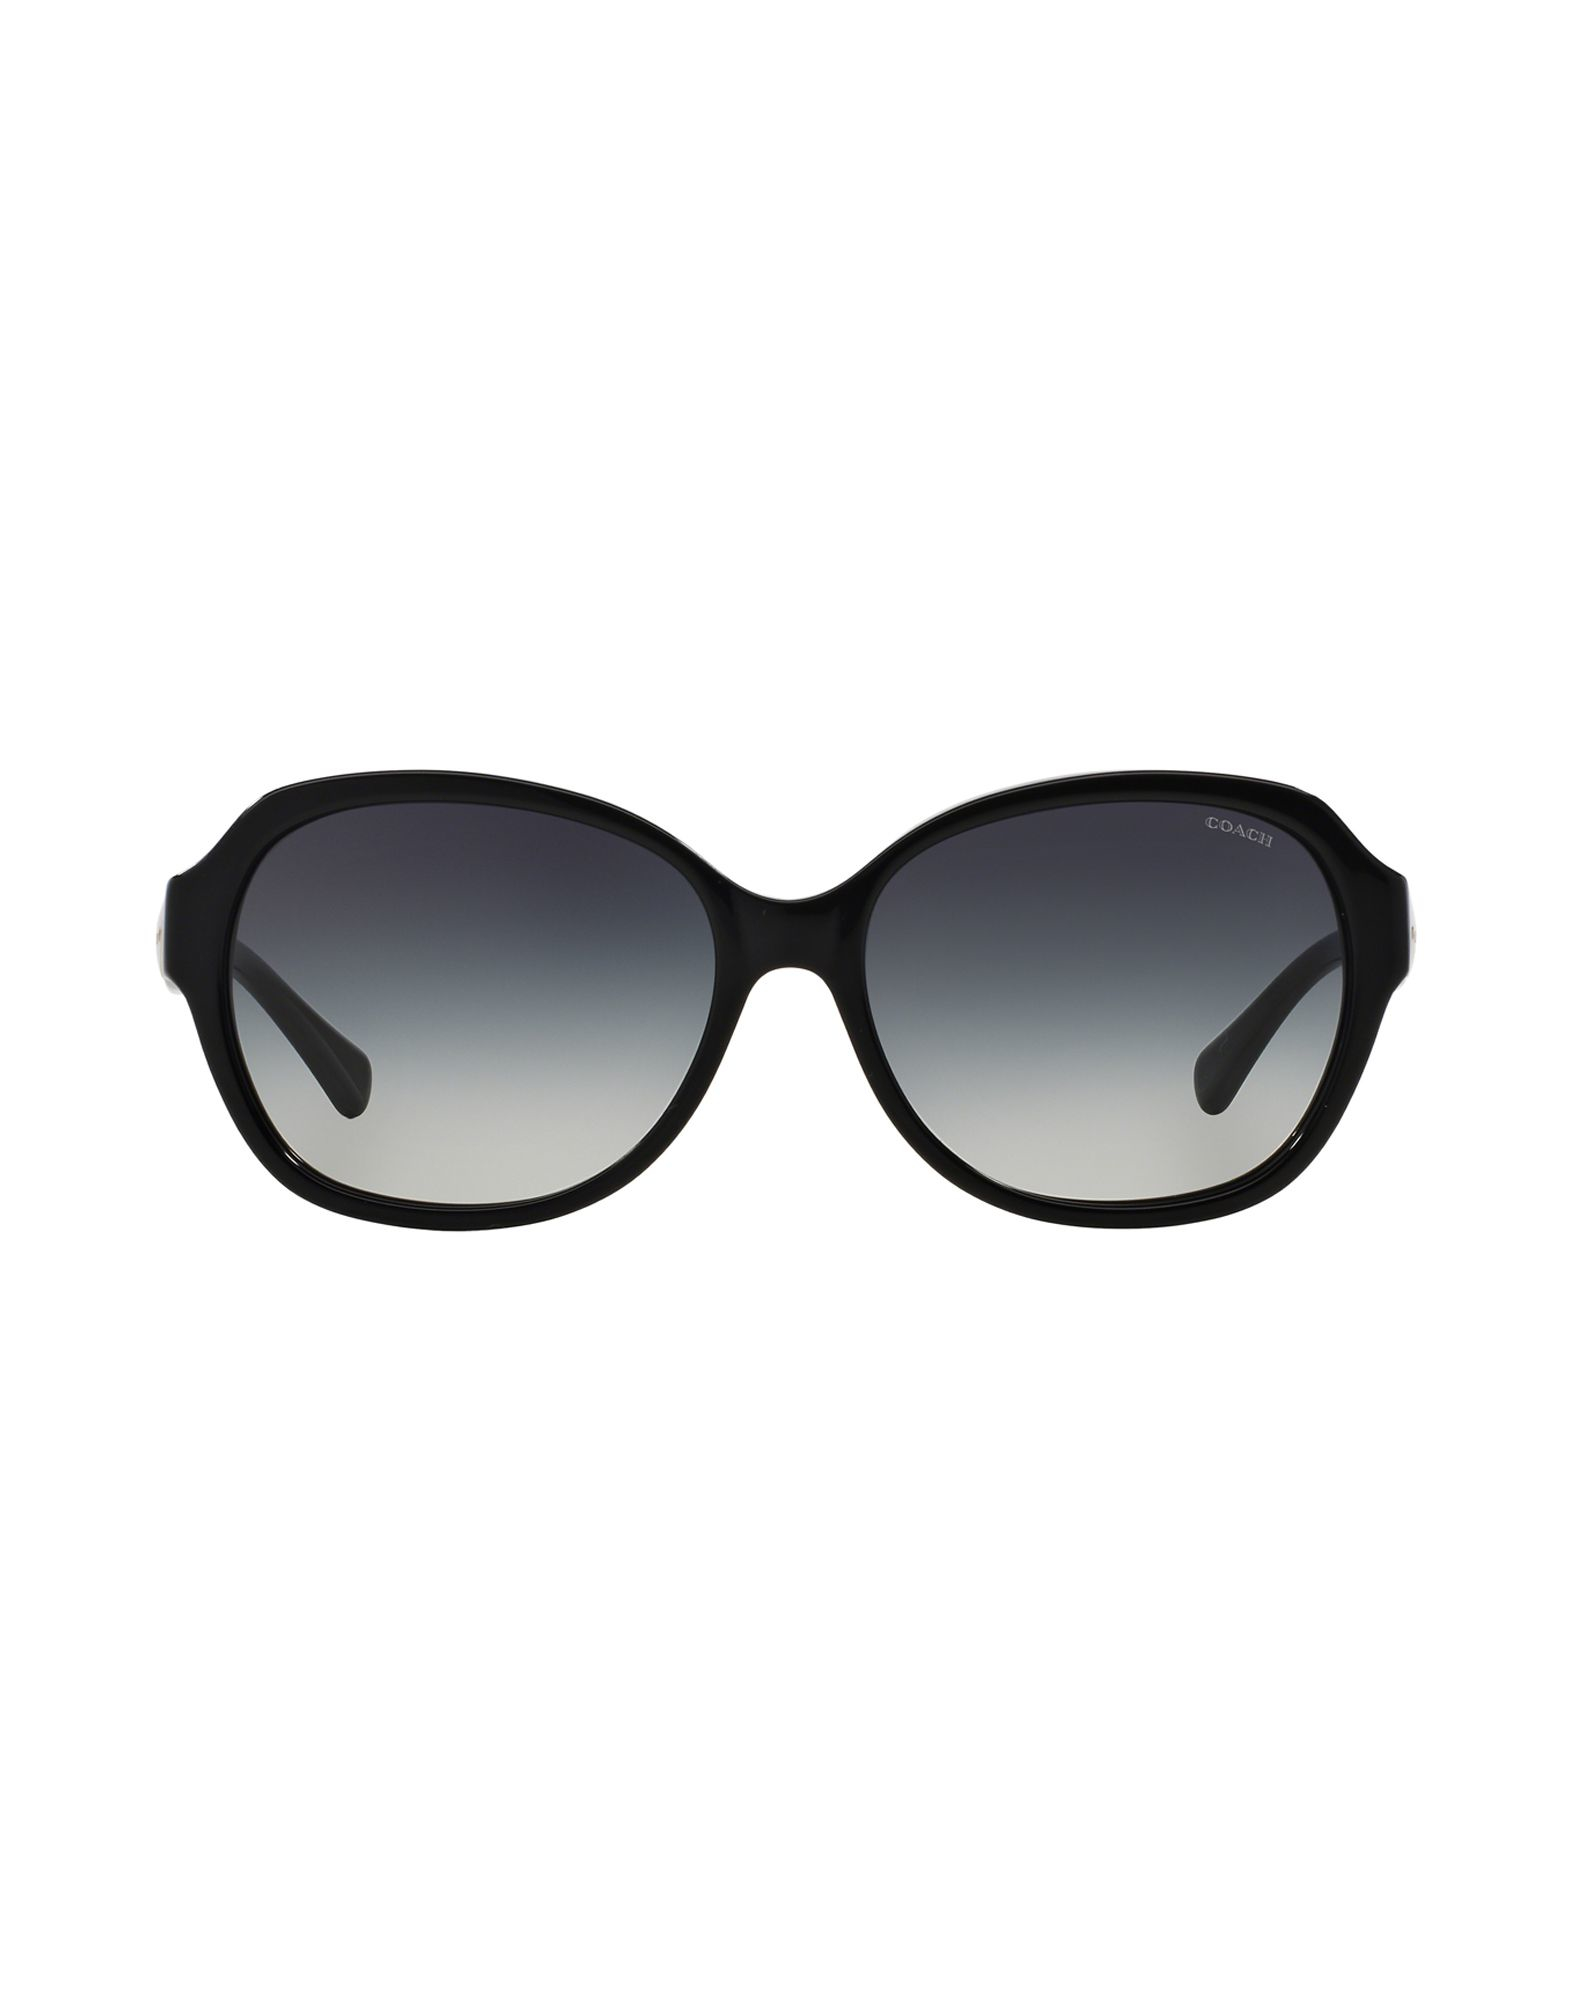 COACH Sunglasses in Black - Lyst